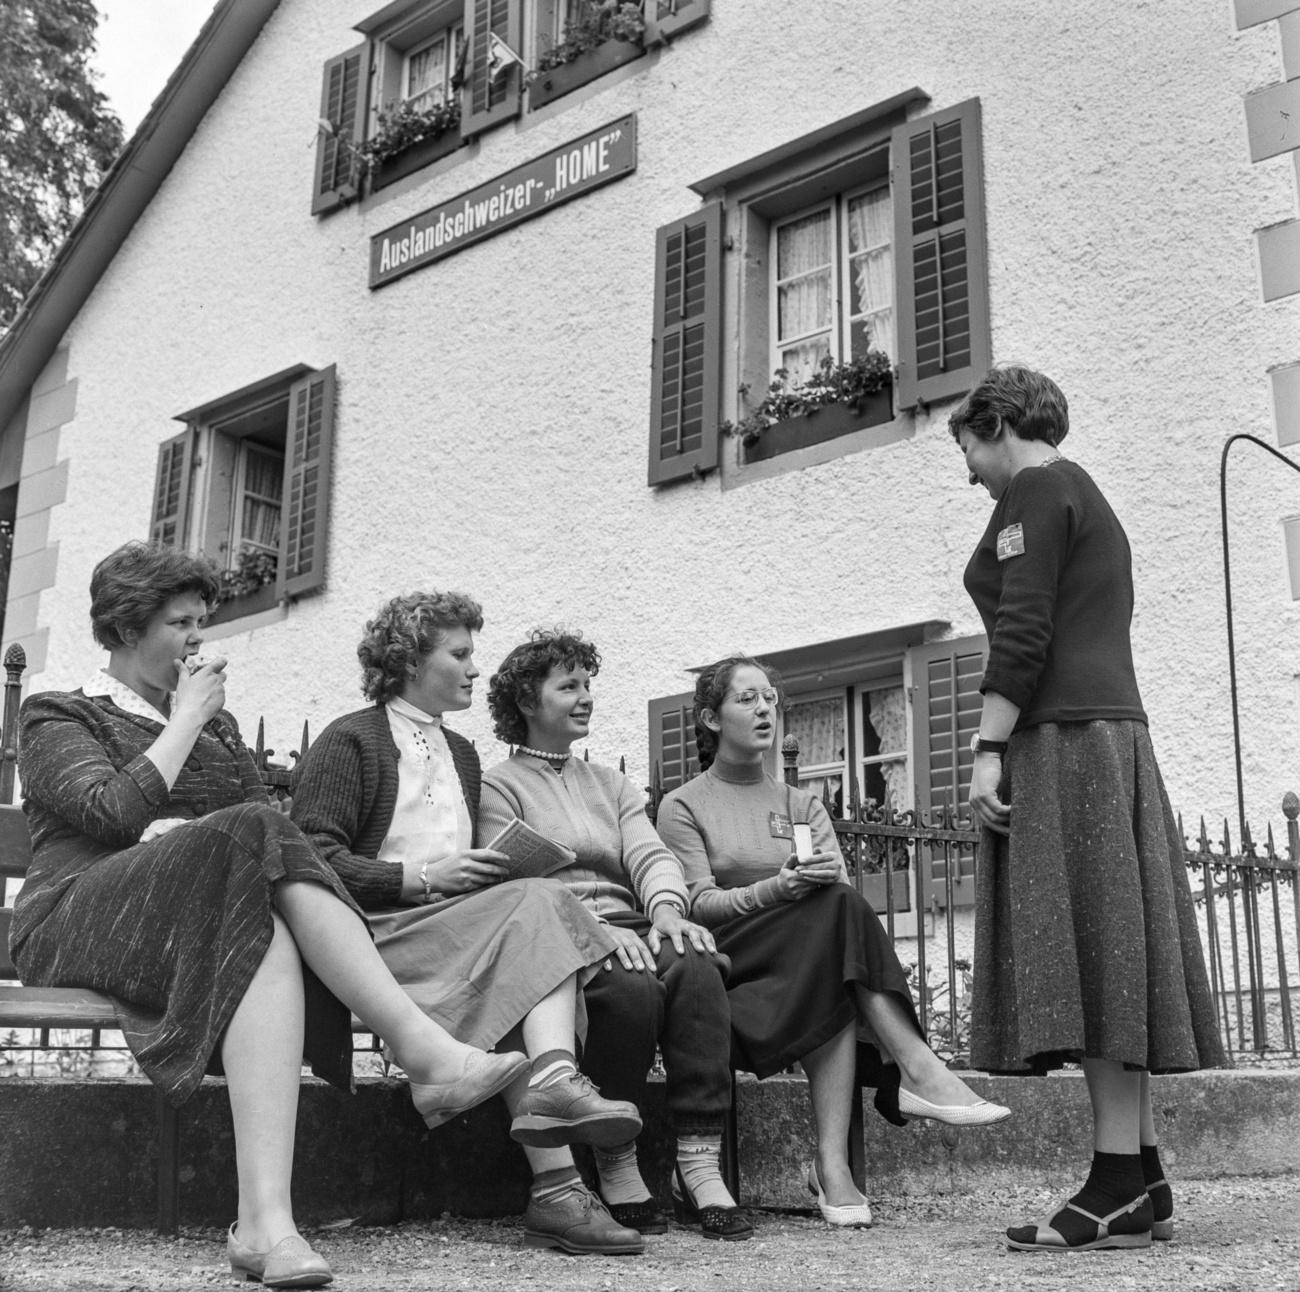 quattro donne sedute su una panchina e una in piedi che chiacchierano, davanti a una casa.